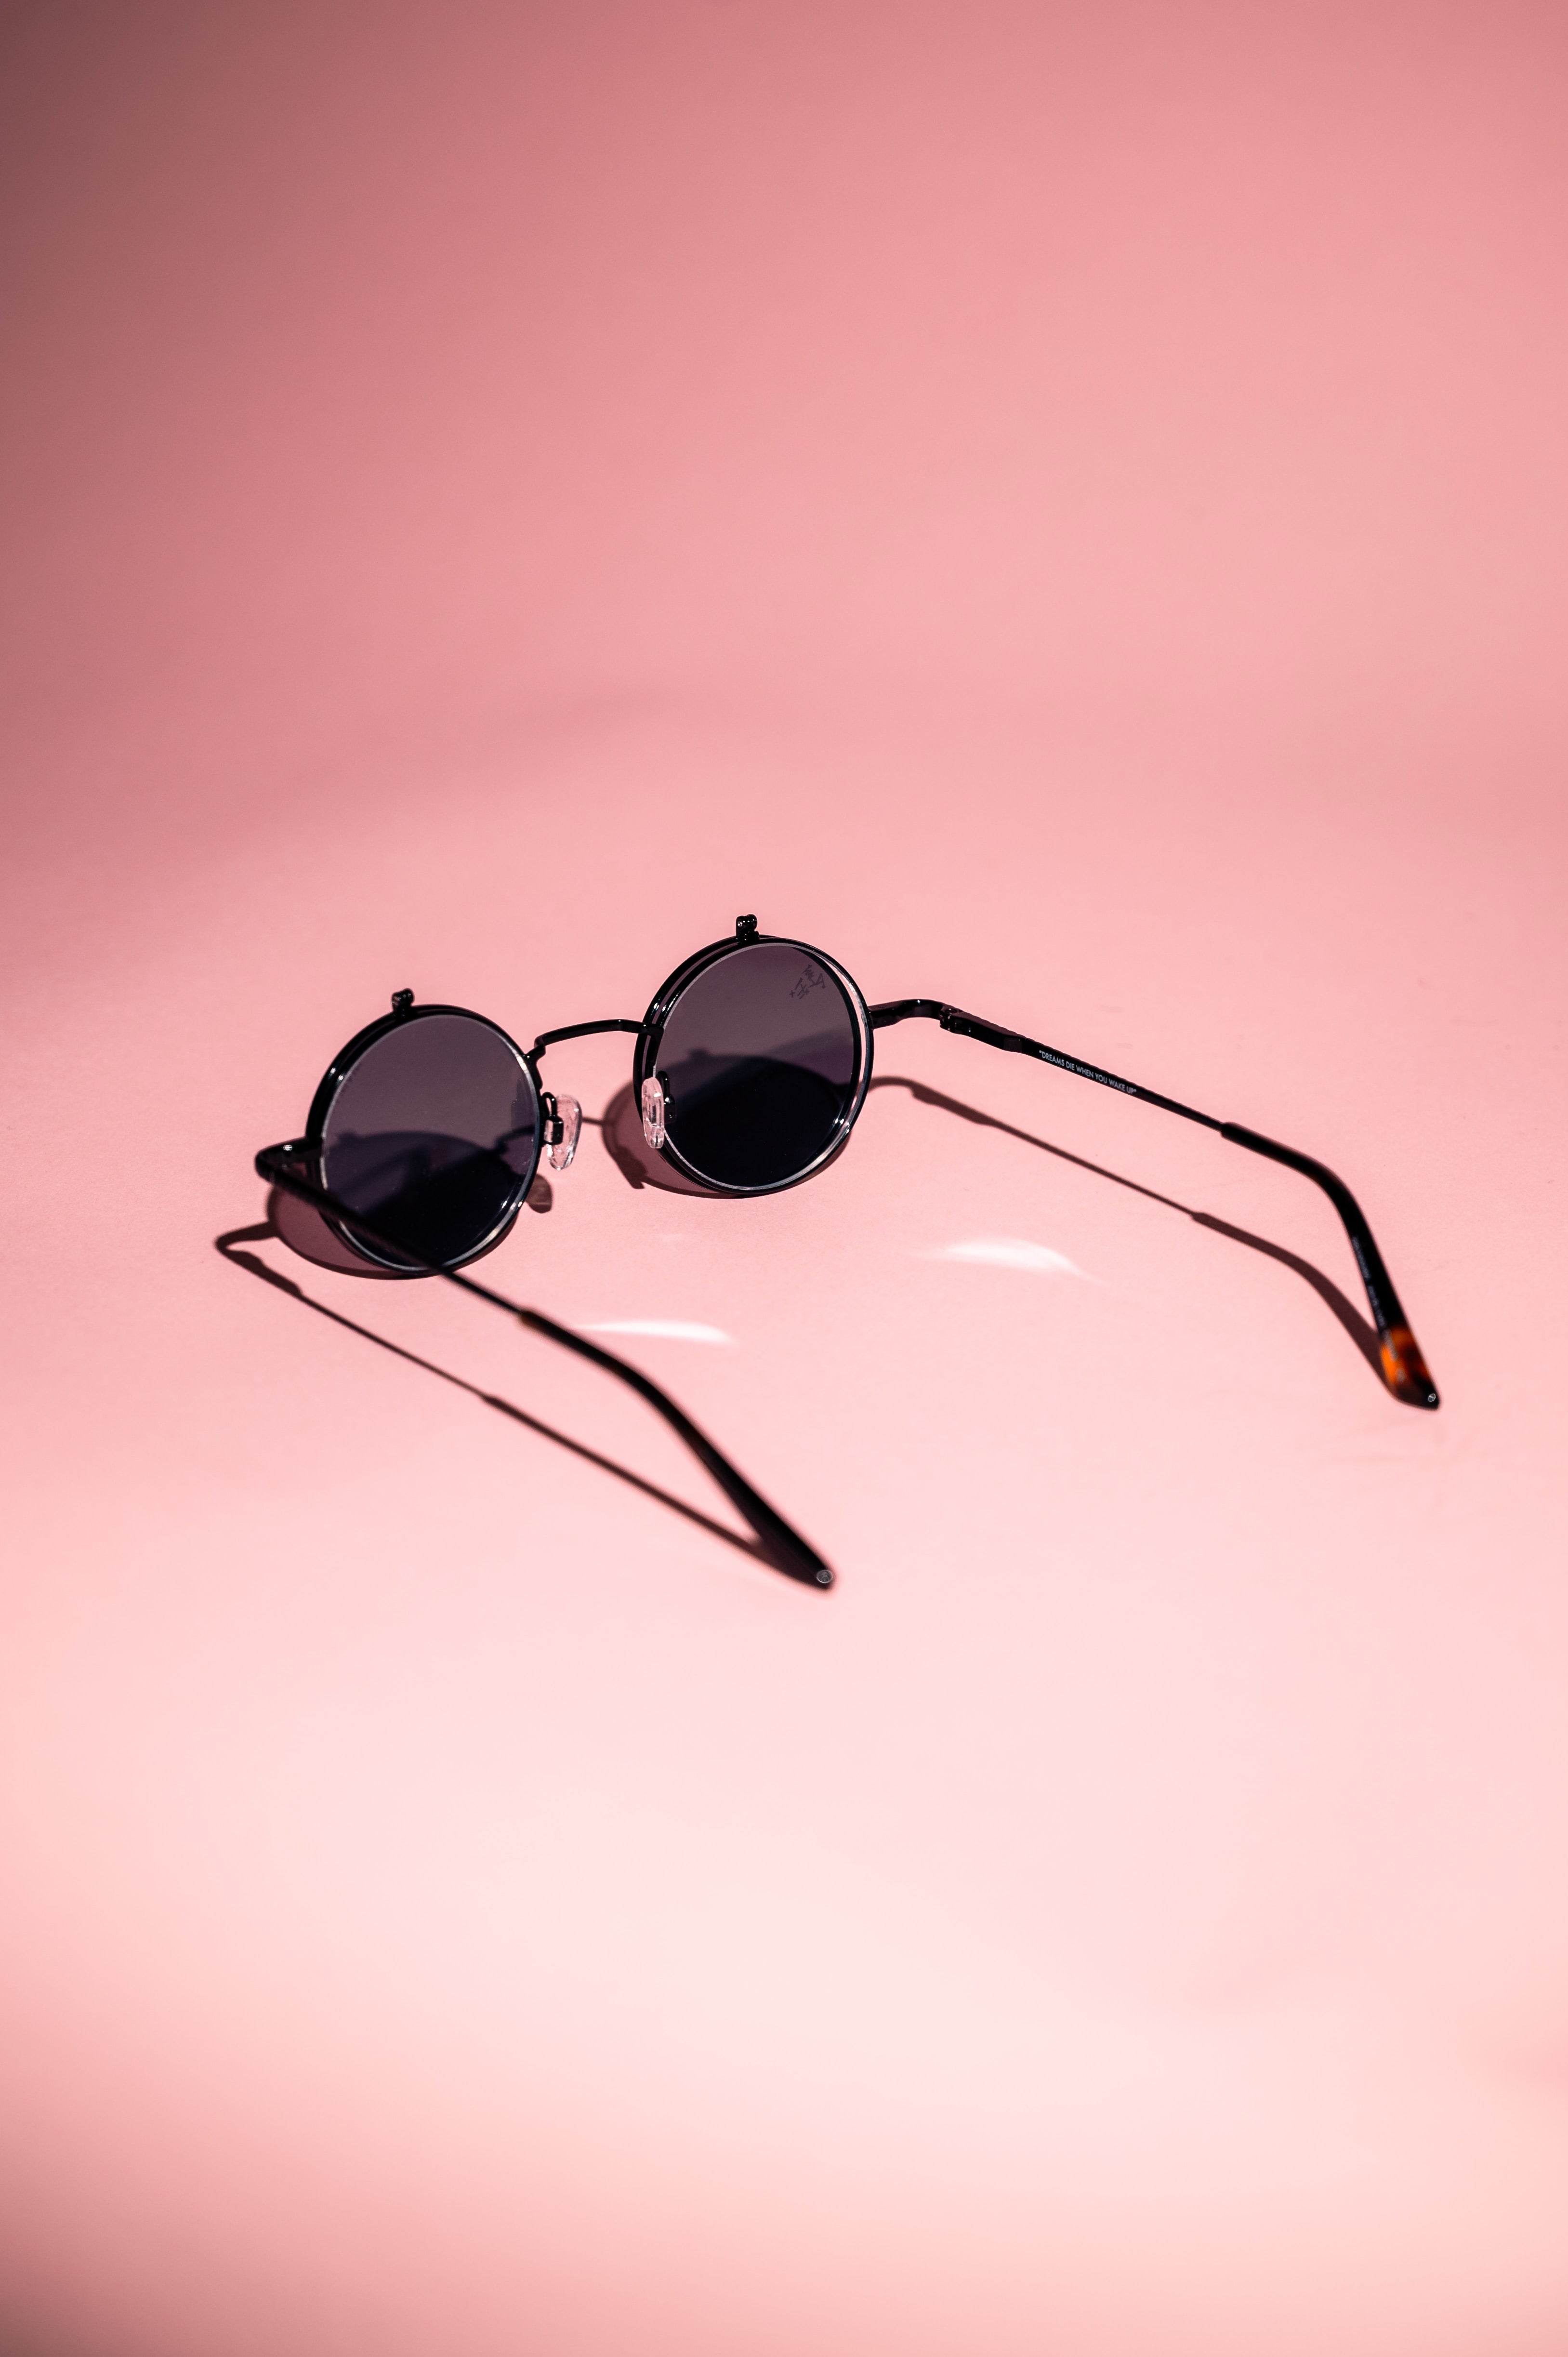 The Comeback of Vintage Retro Sunglasses